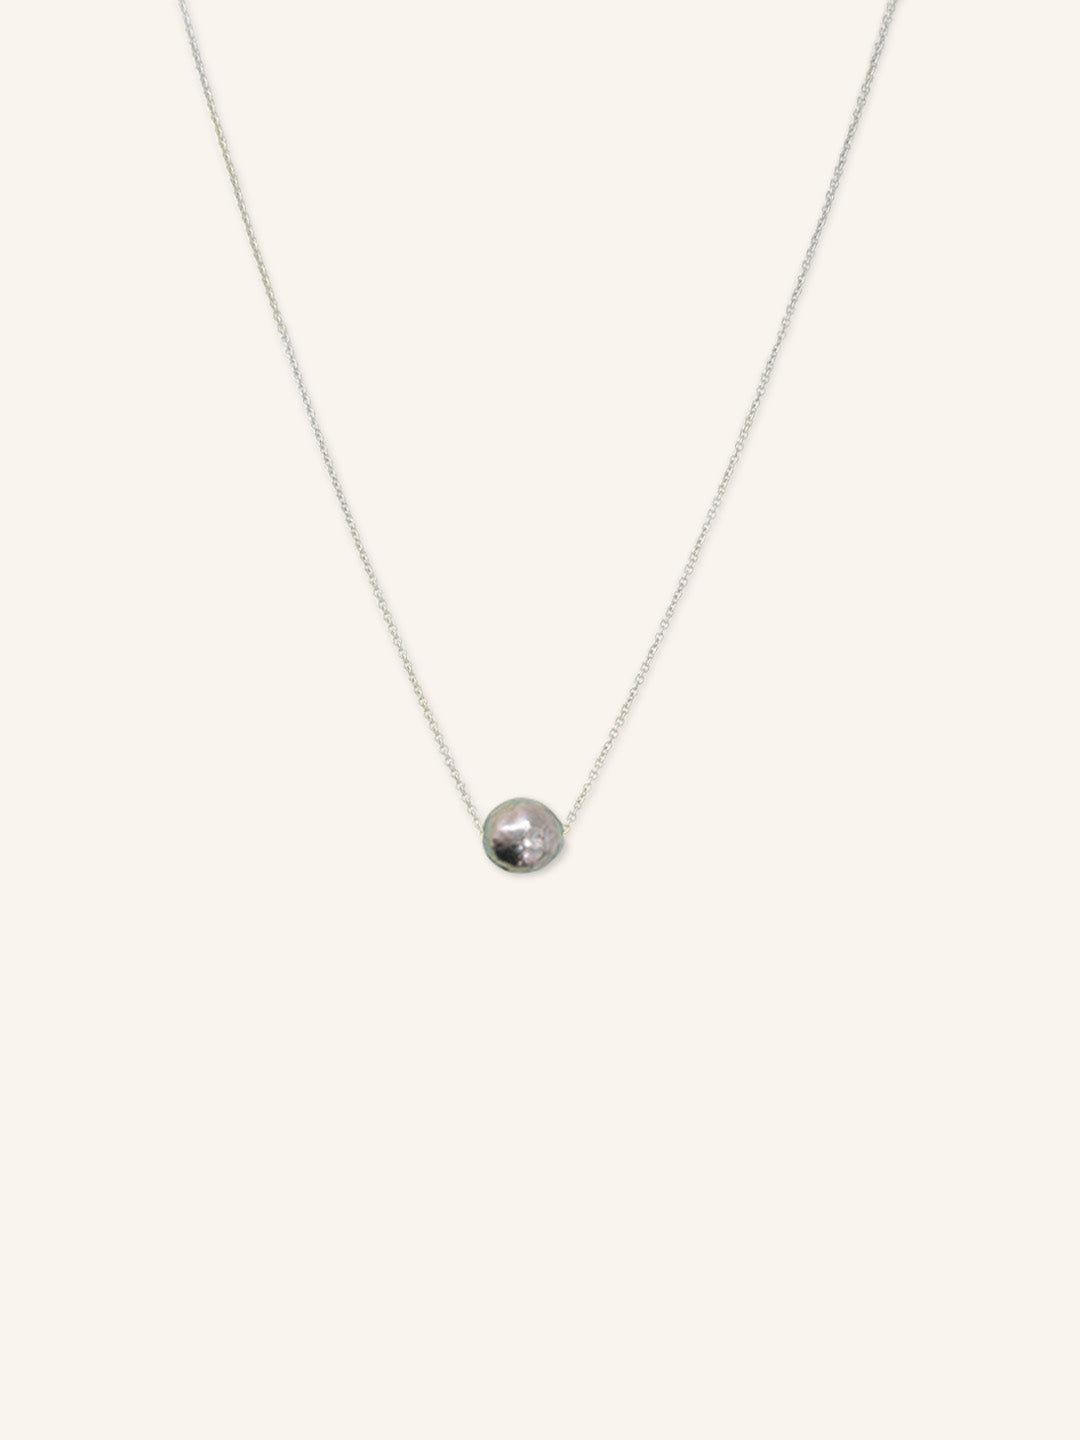 Cozy Nook Black Pearl Necklace